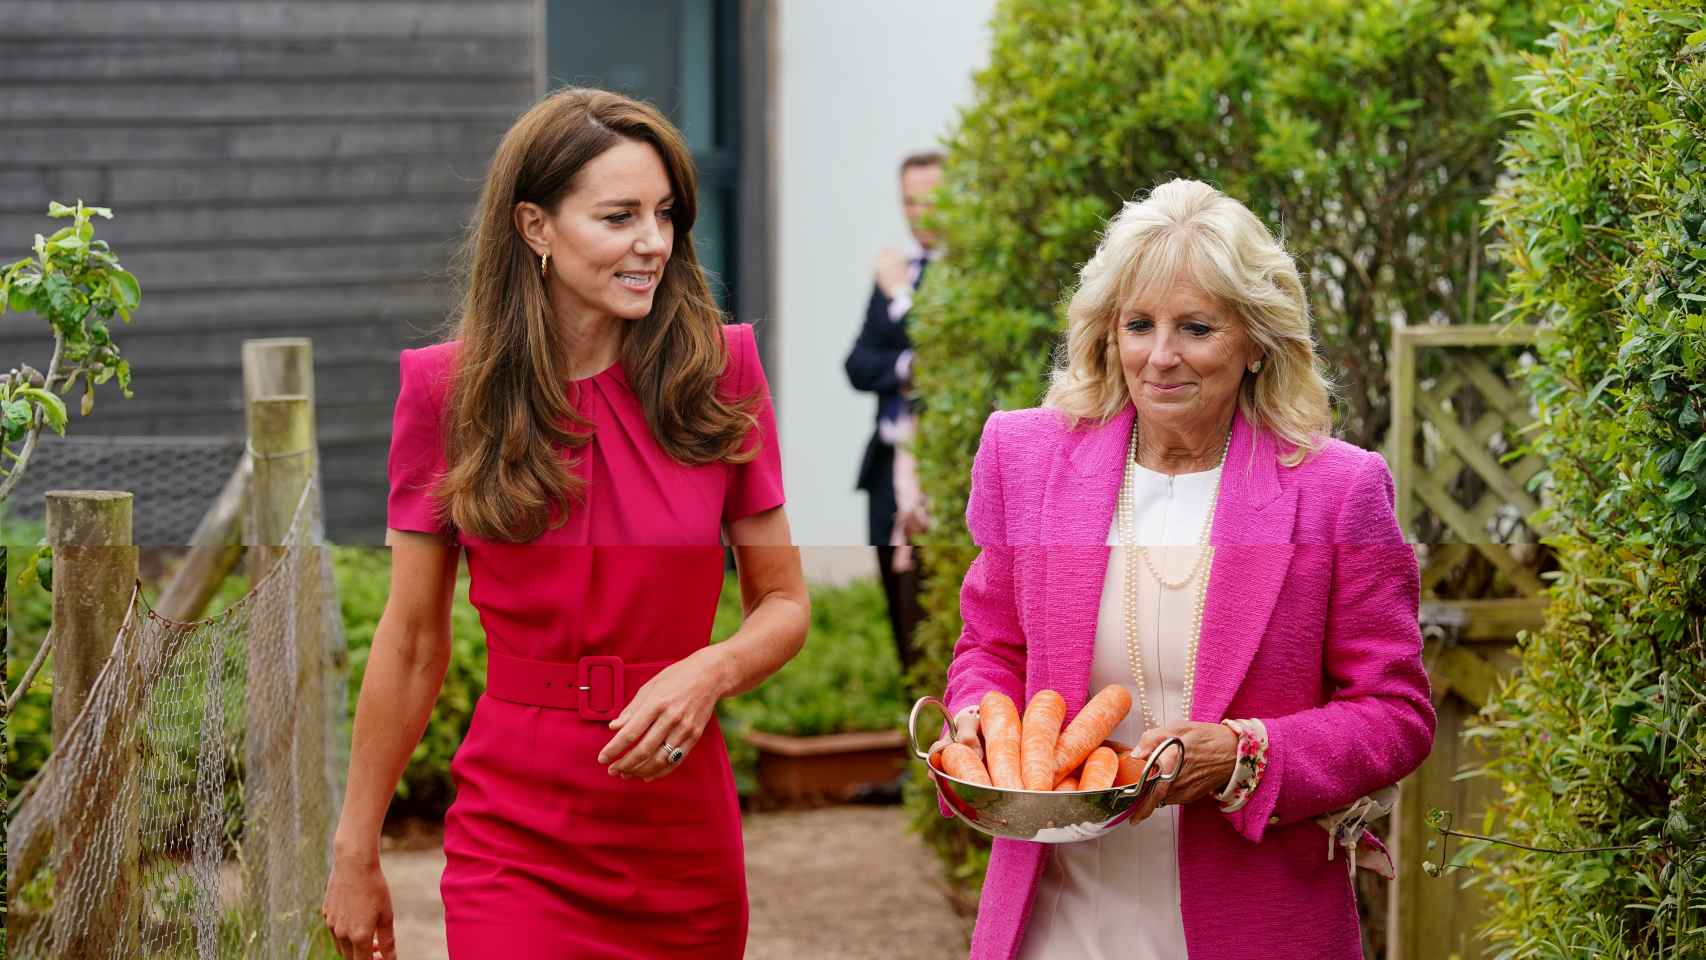 La esposa del presidente de Estados Unidos, con zanahorias para los conejos del centro, acompañada por la duquesa.